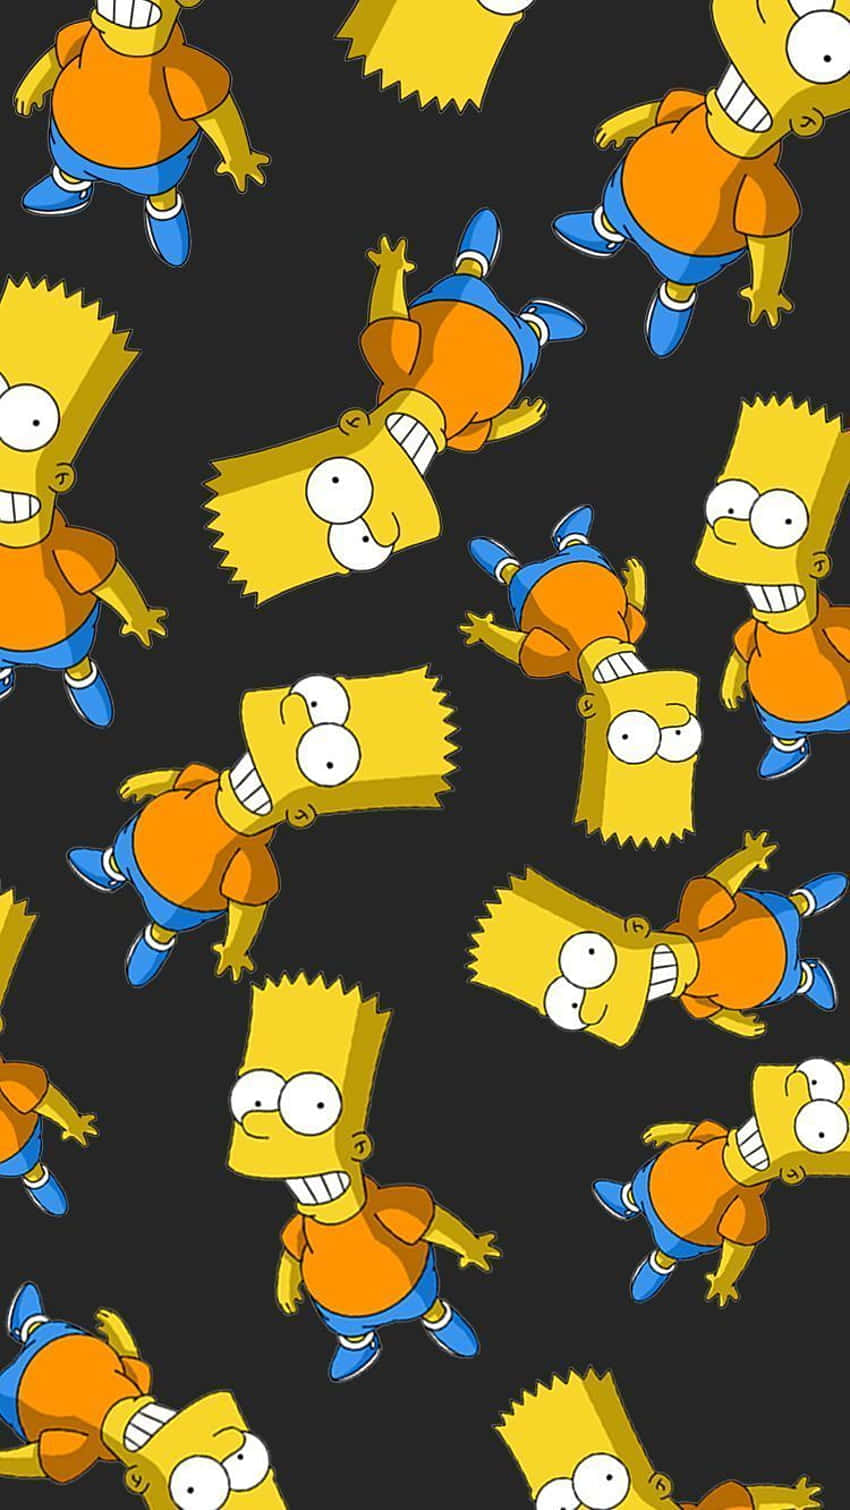 Obténese Genial Aspecto De Los Simpsons Fondo de pantalla